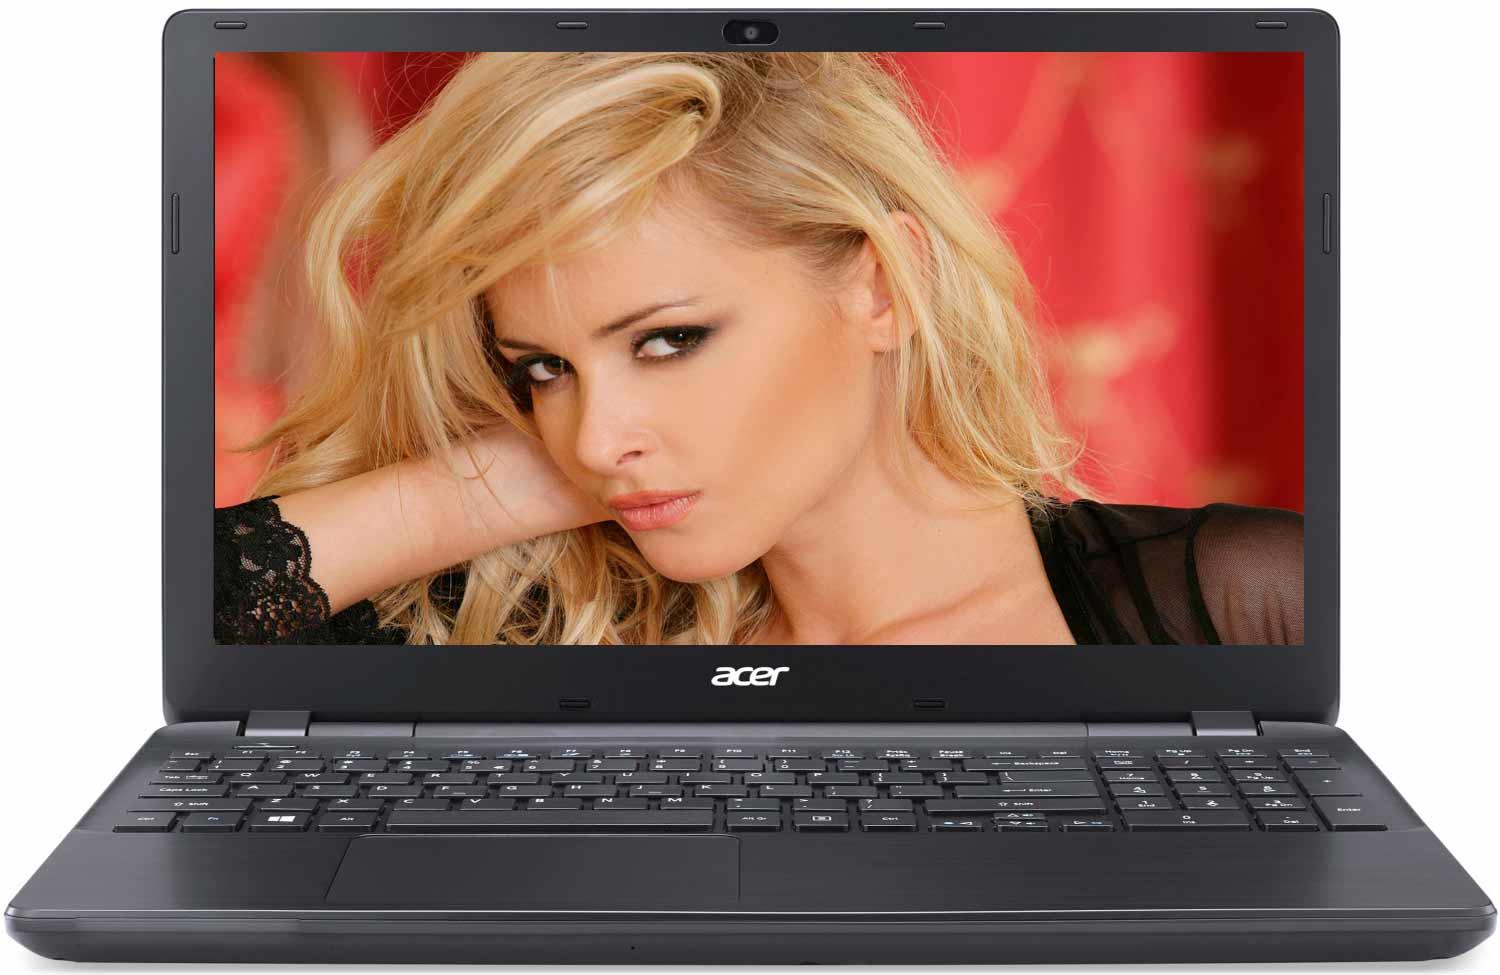   Acer Extensa EX2519-C5G3 (NX.EFAER.071)  1